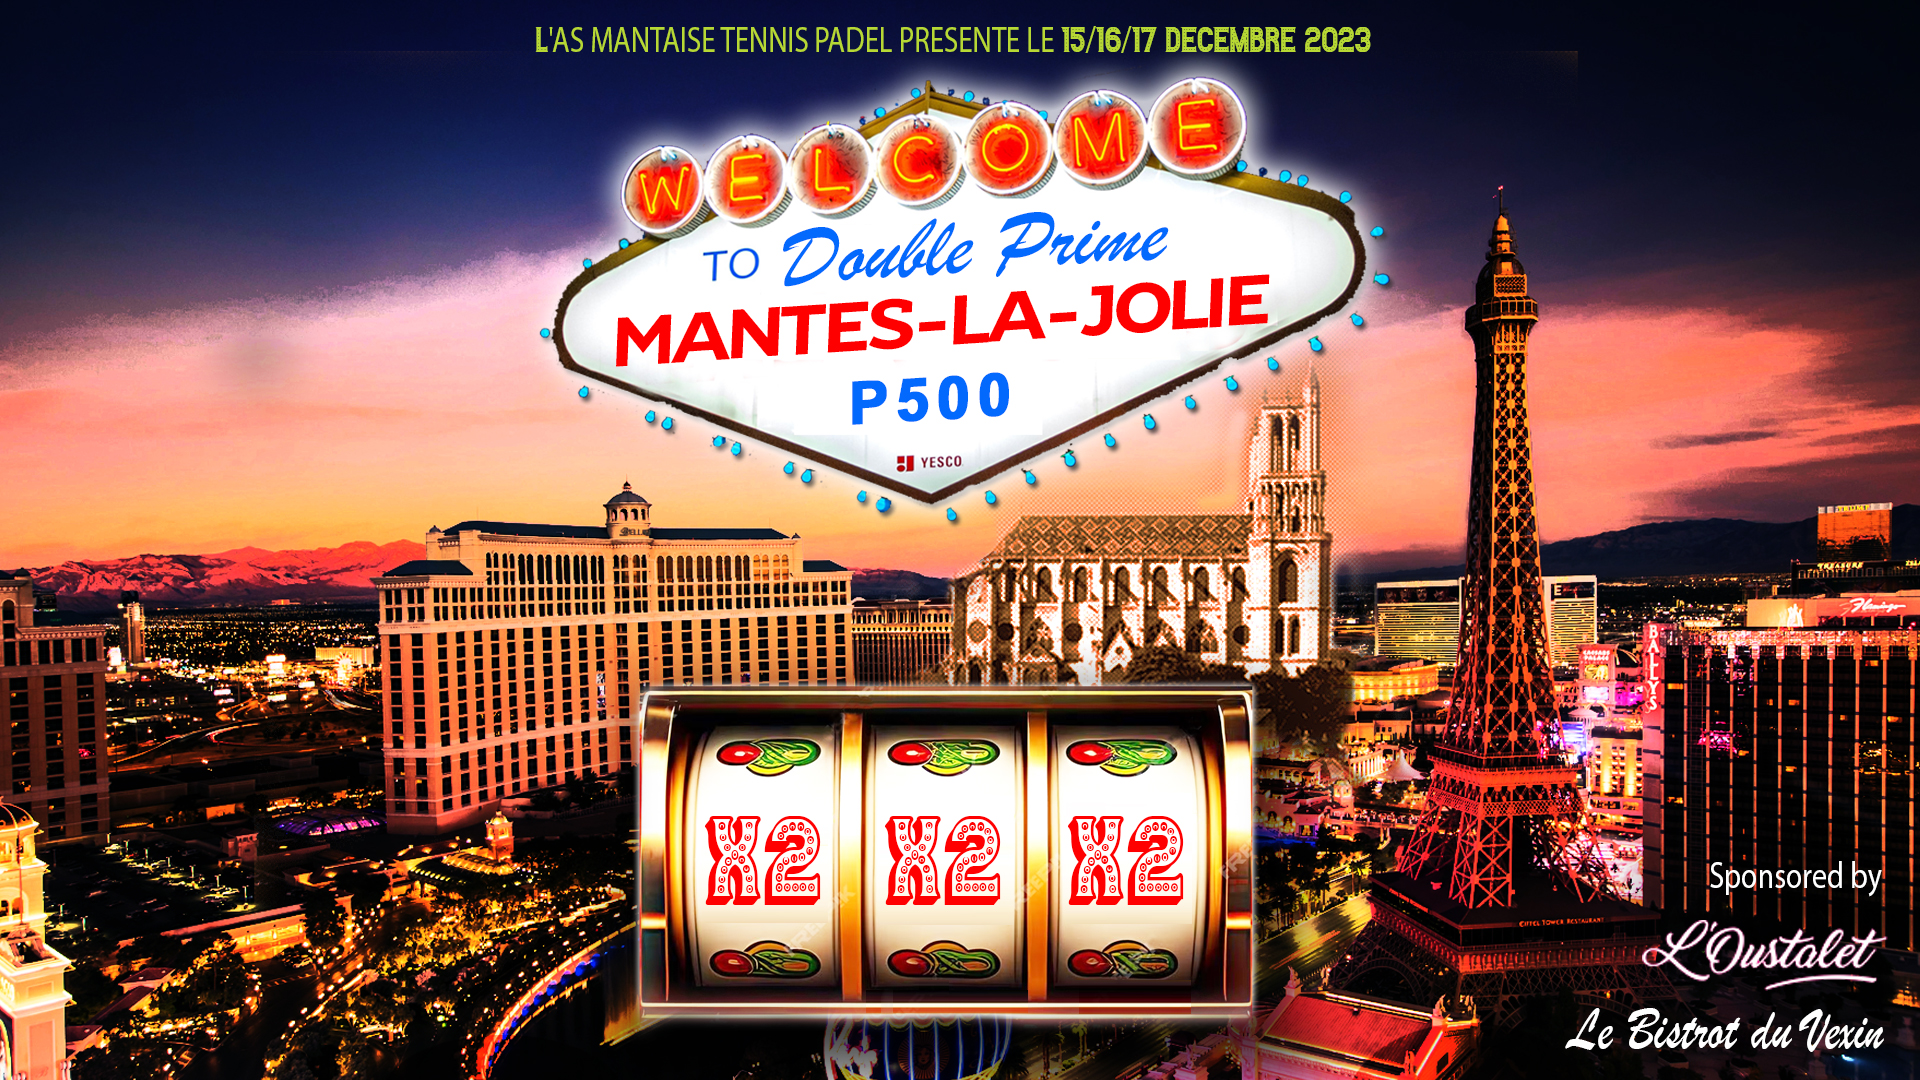 P500 "Double Prime" Mantes-la-Jolie av L'Oustalet